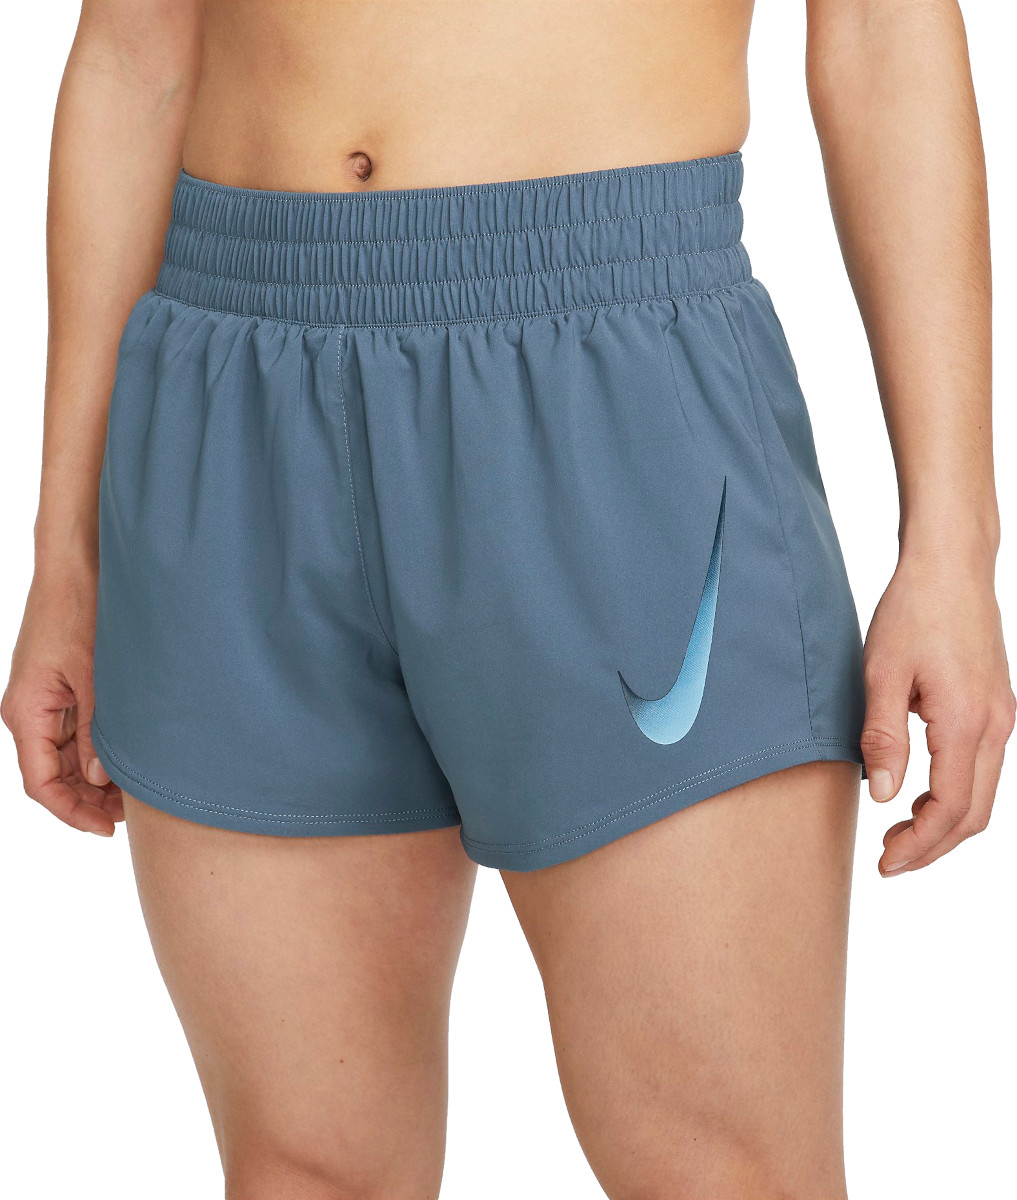 Dámské běžecké kraťasy s všitými kalhotkami Nike Swoosh